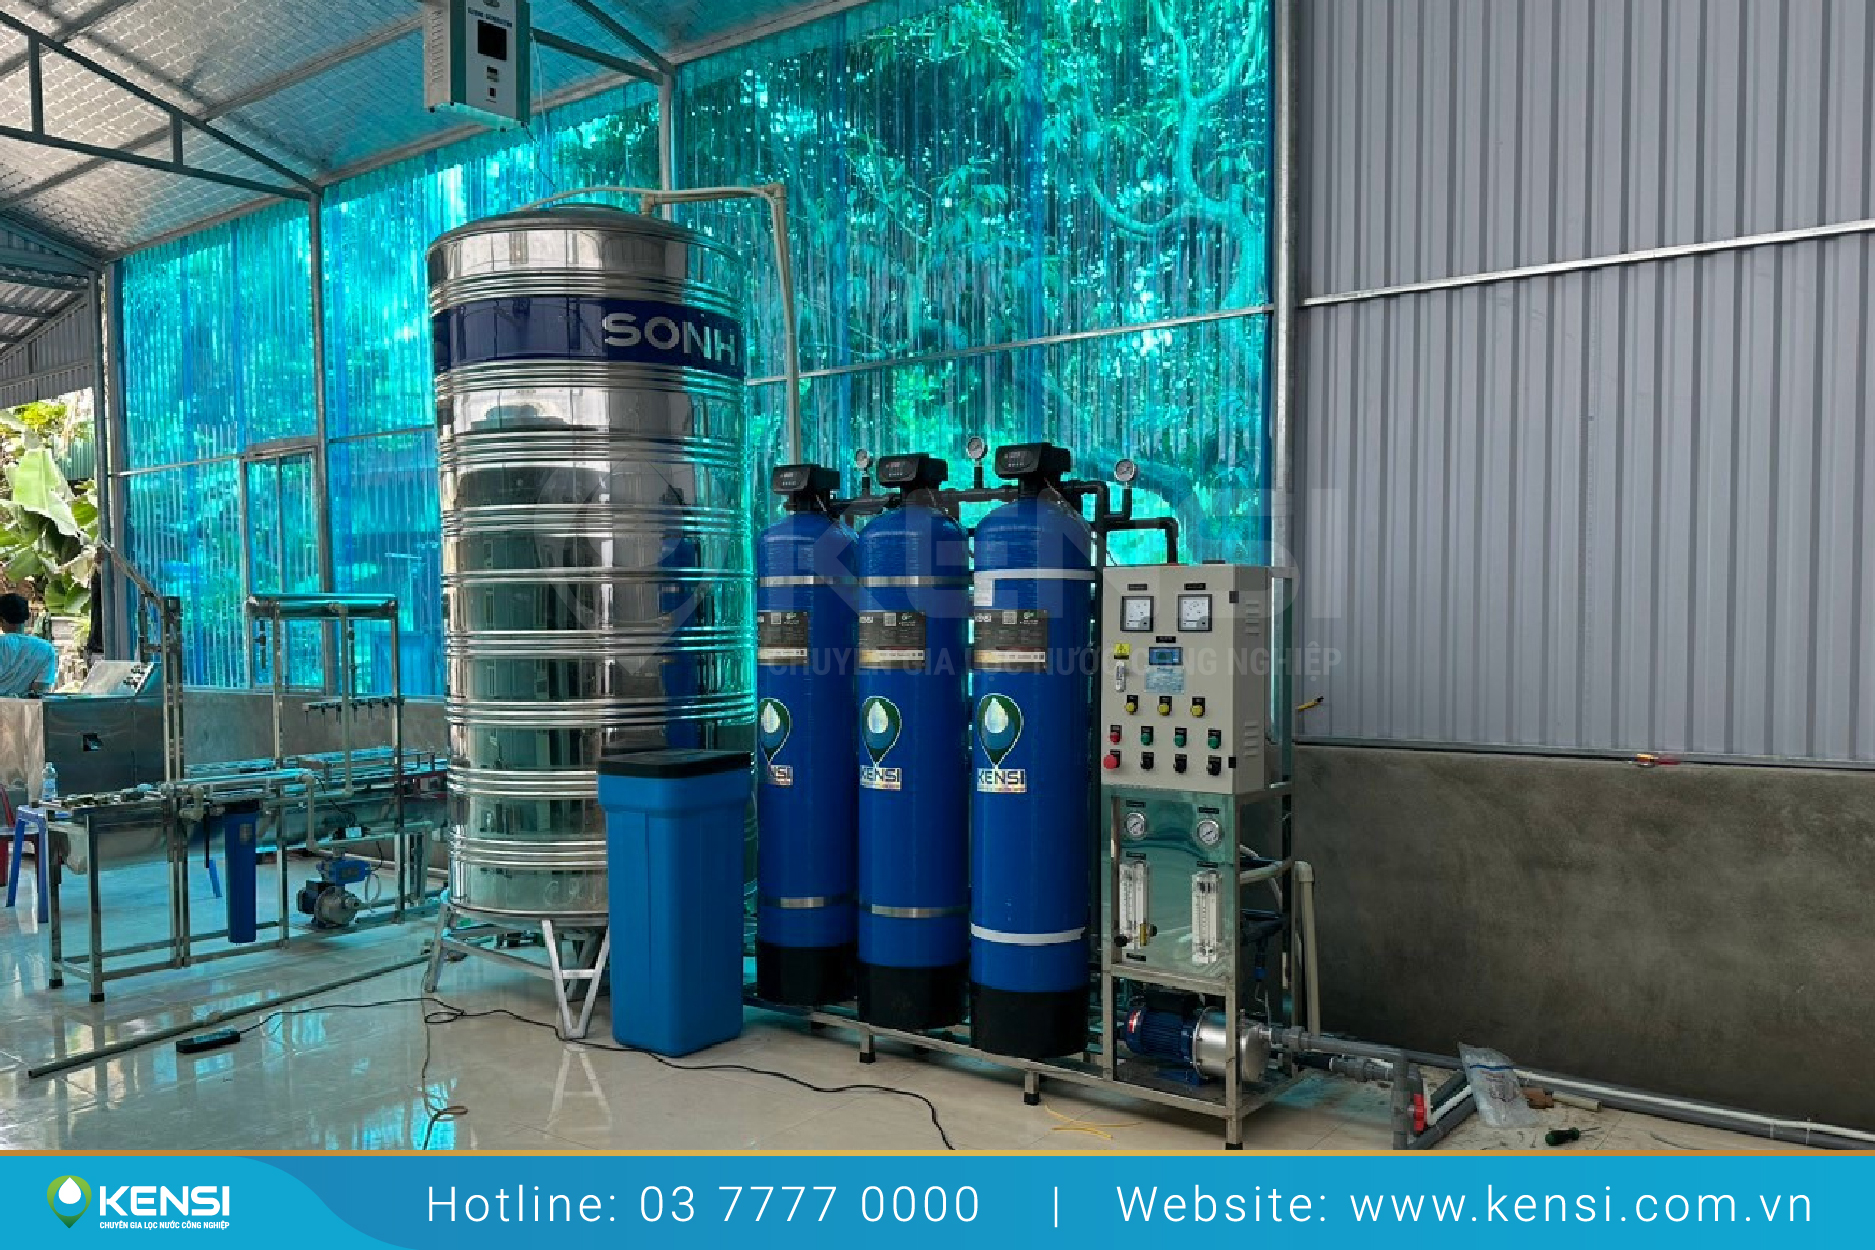 Tekcom cung cấp thiết bị và giải pháp lọc nước toàn diện